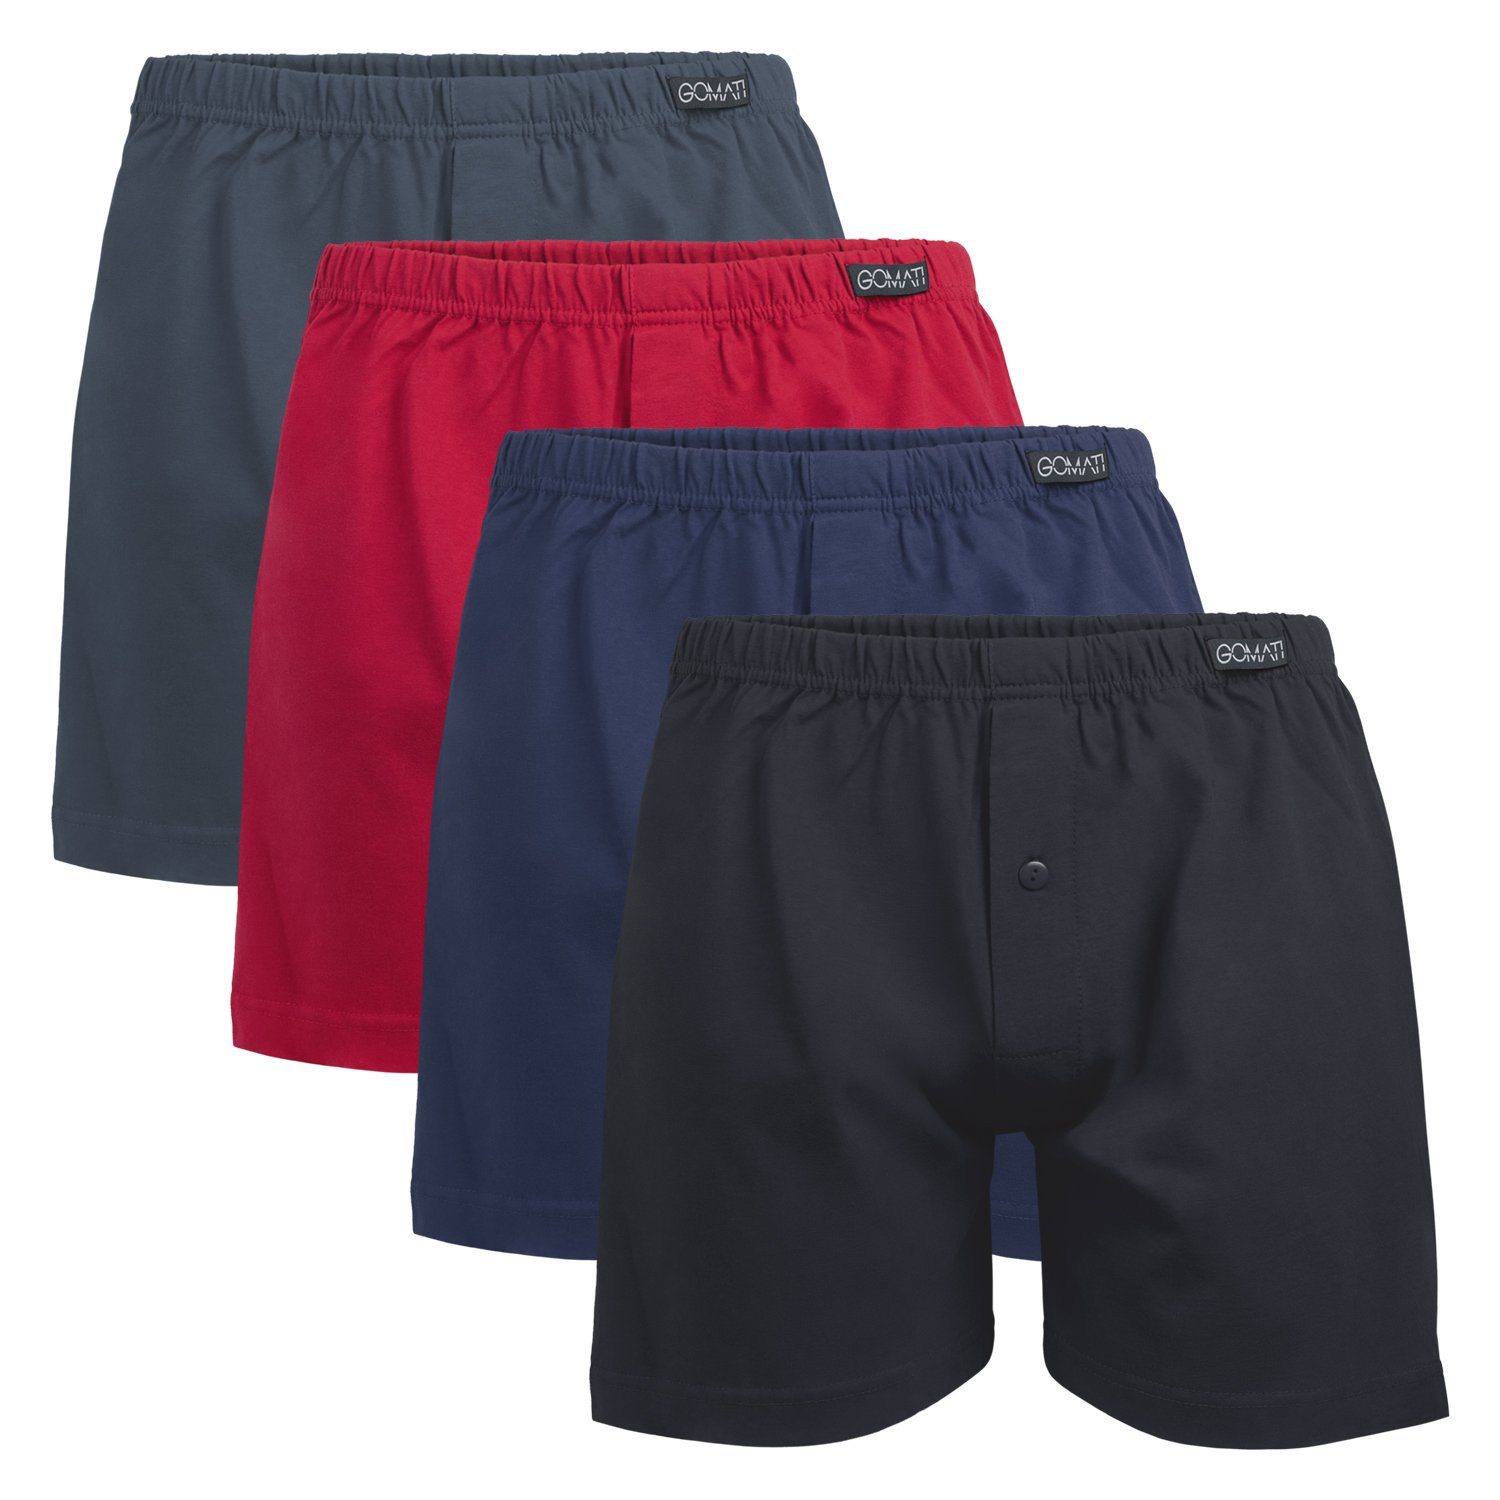 Gomati Boxershorts Herren Jersey Boxershorts Stretch Shorts aus Baumwolle (4er Pack) Mix (Schwarz+Anthrazit+D.Red+D.Navy)